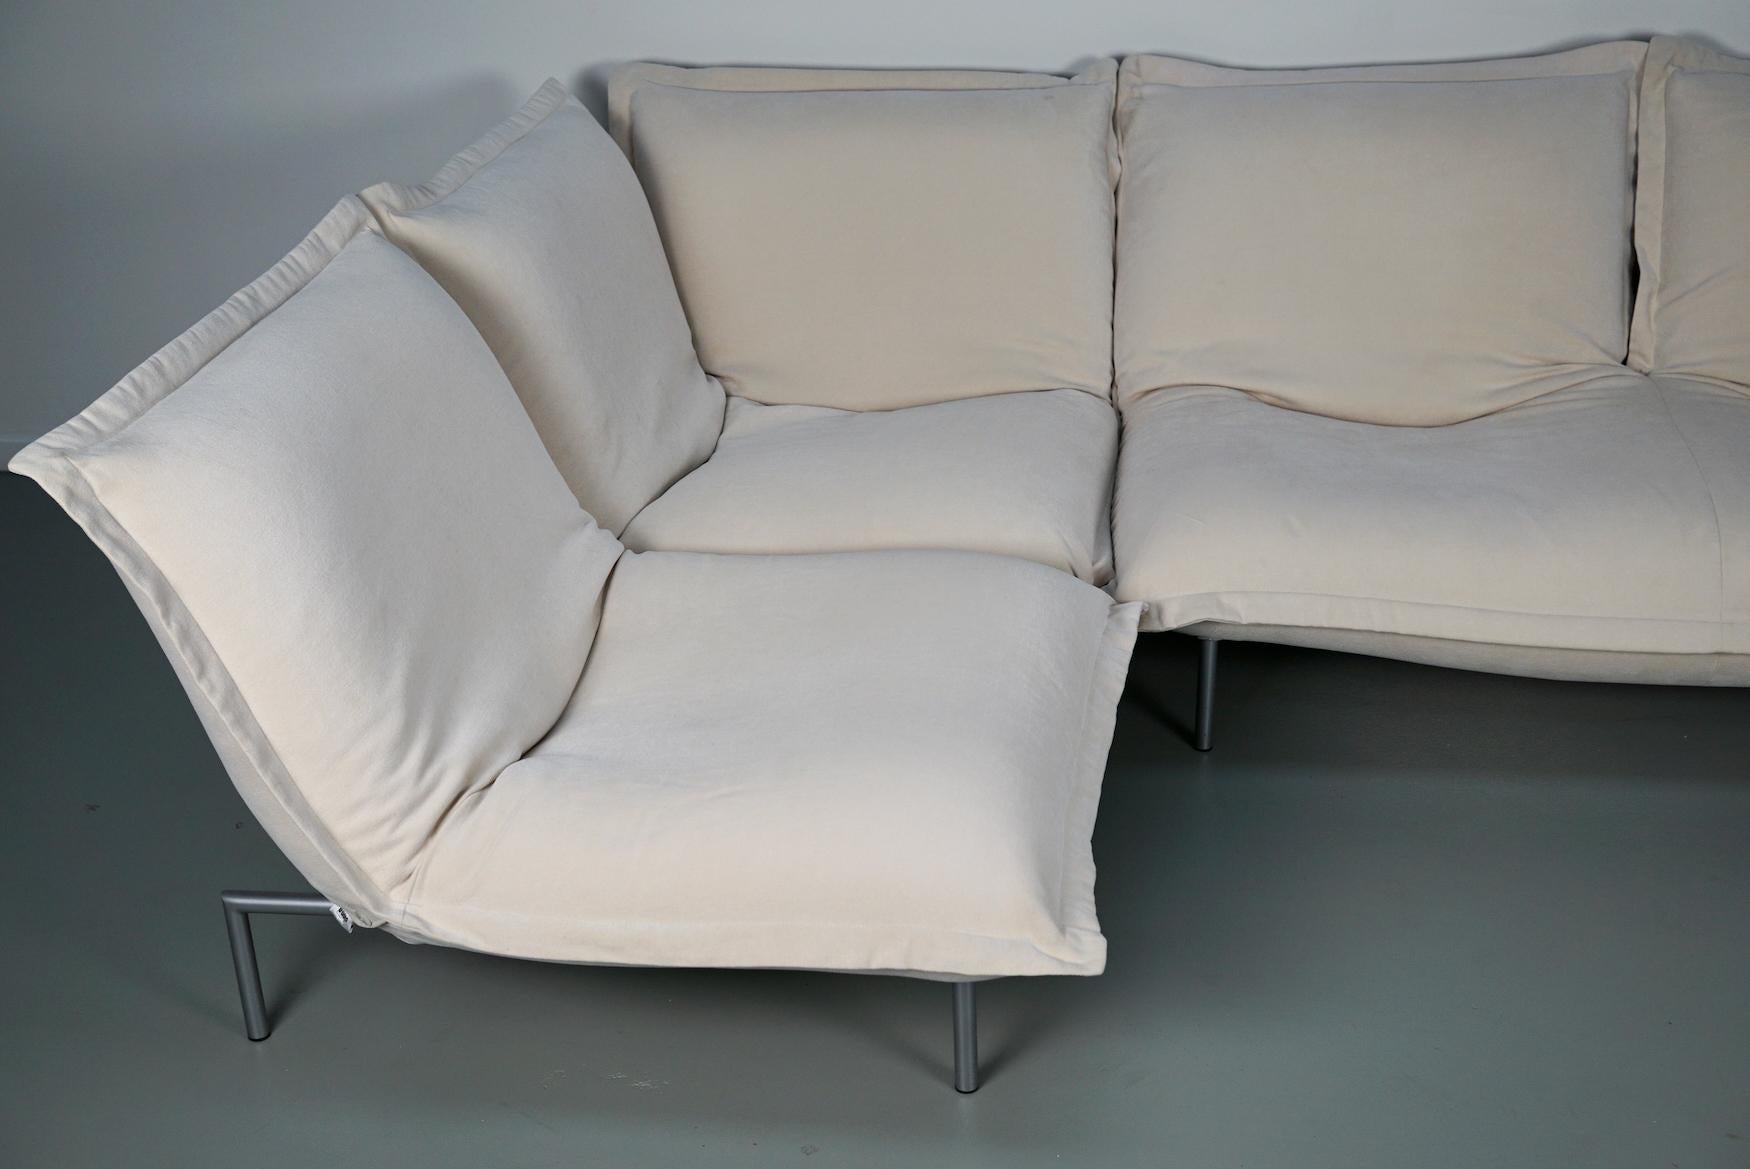 Calin Corner Sofa Set by Pascal Mourgue for Cinna / Ligne Roset - 4 seater 1